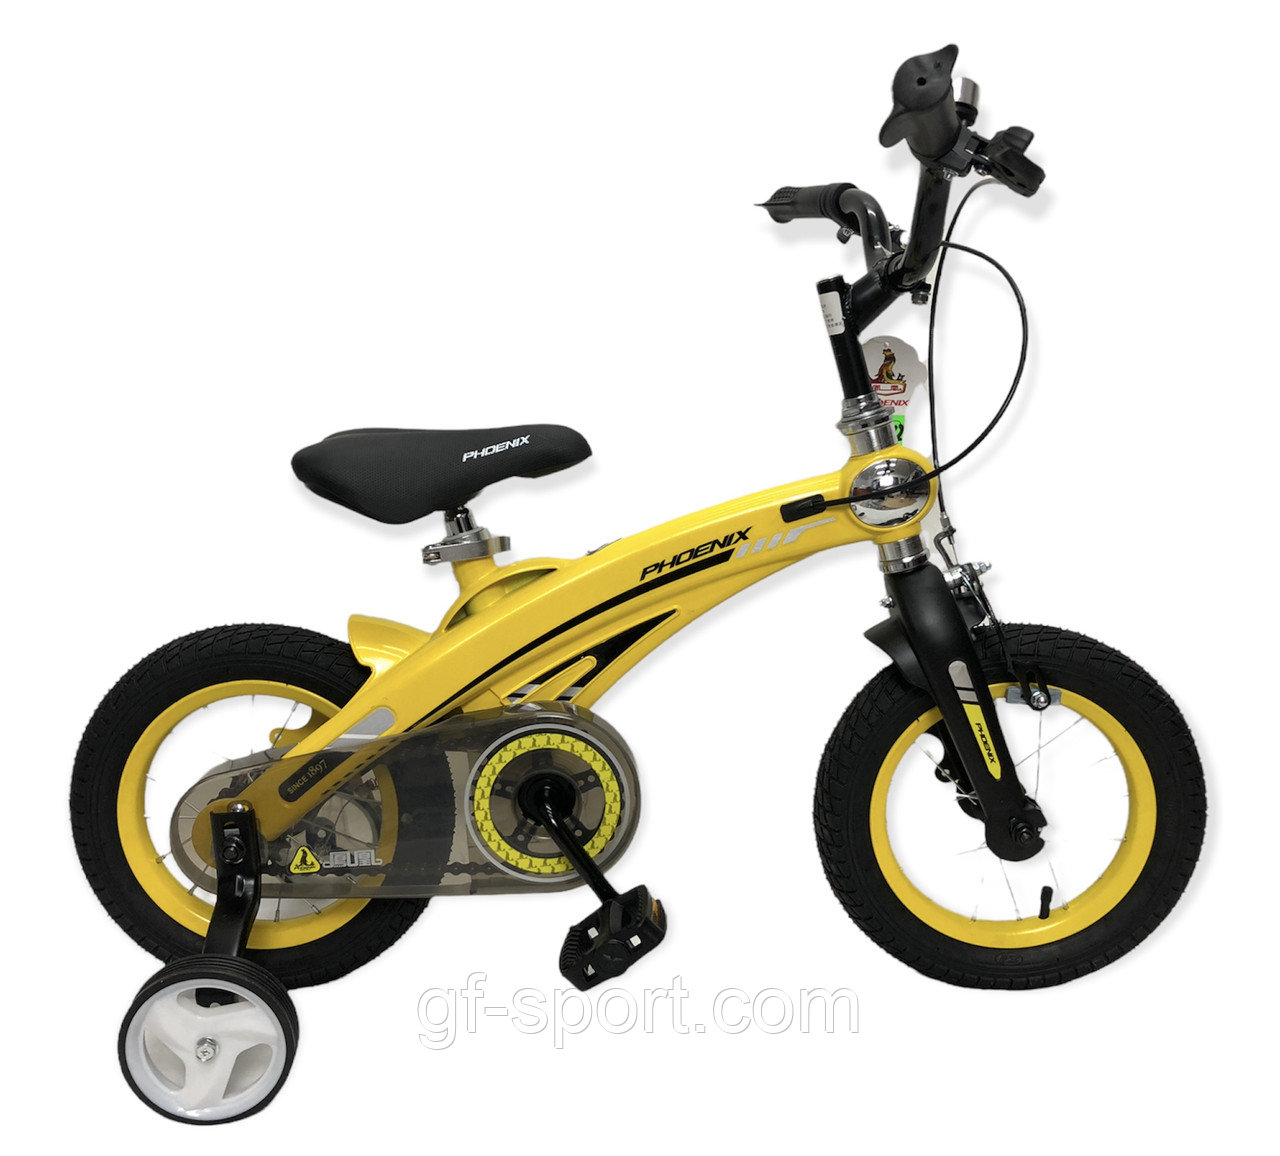 Велосипед Phoenix желтый алюминиевый сплав оригинал детский с холостым ходом 12 размер (528-12)